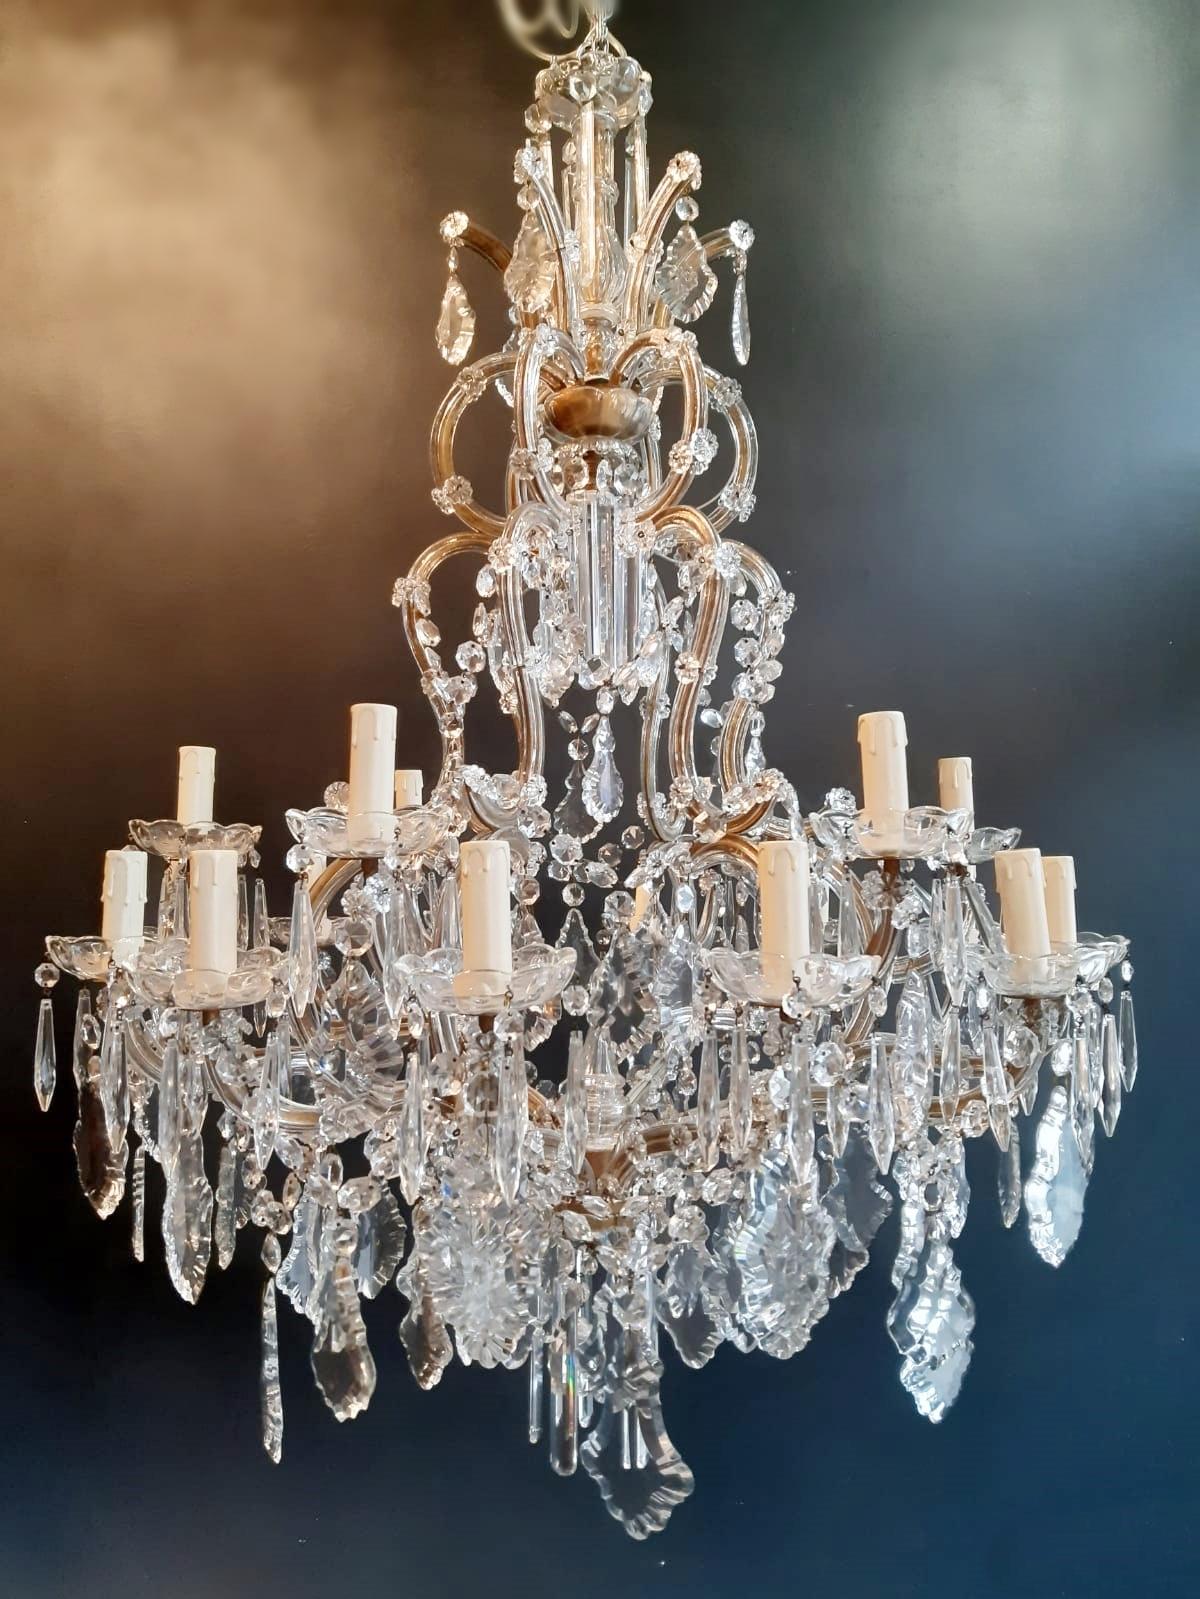 Nineteen-Light Maria Theresa Chandelier Antique Ceiling Lamp Lustre Art Nouveau 4